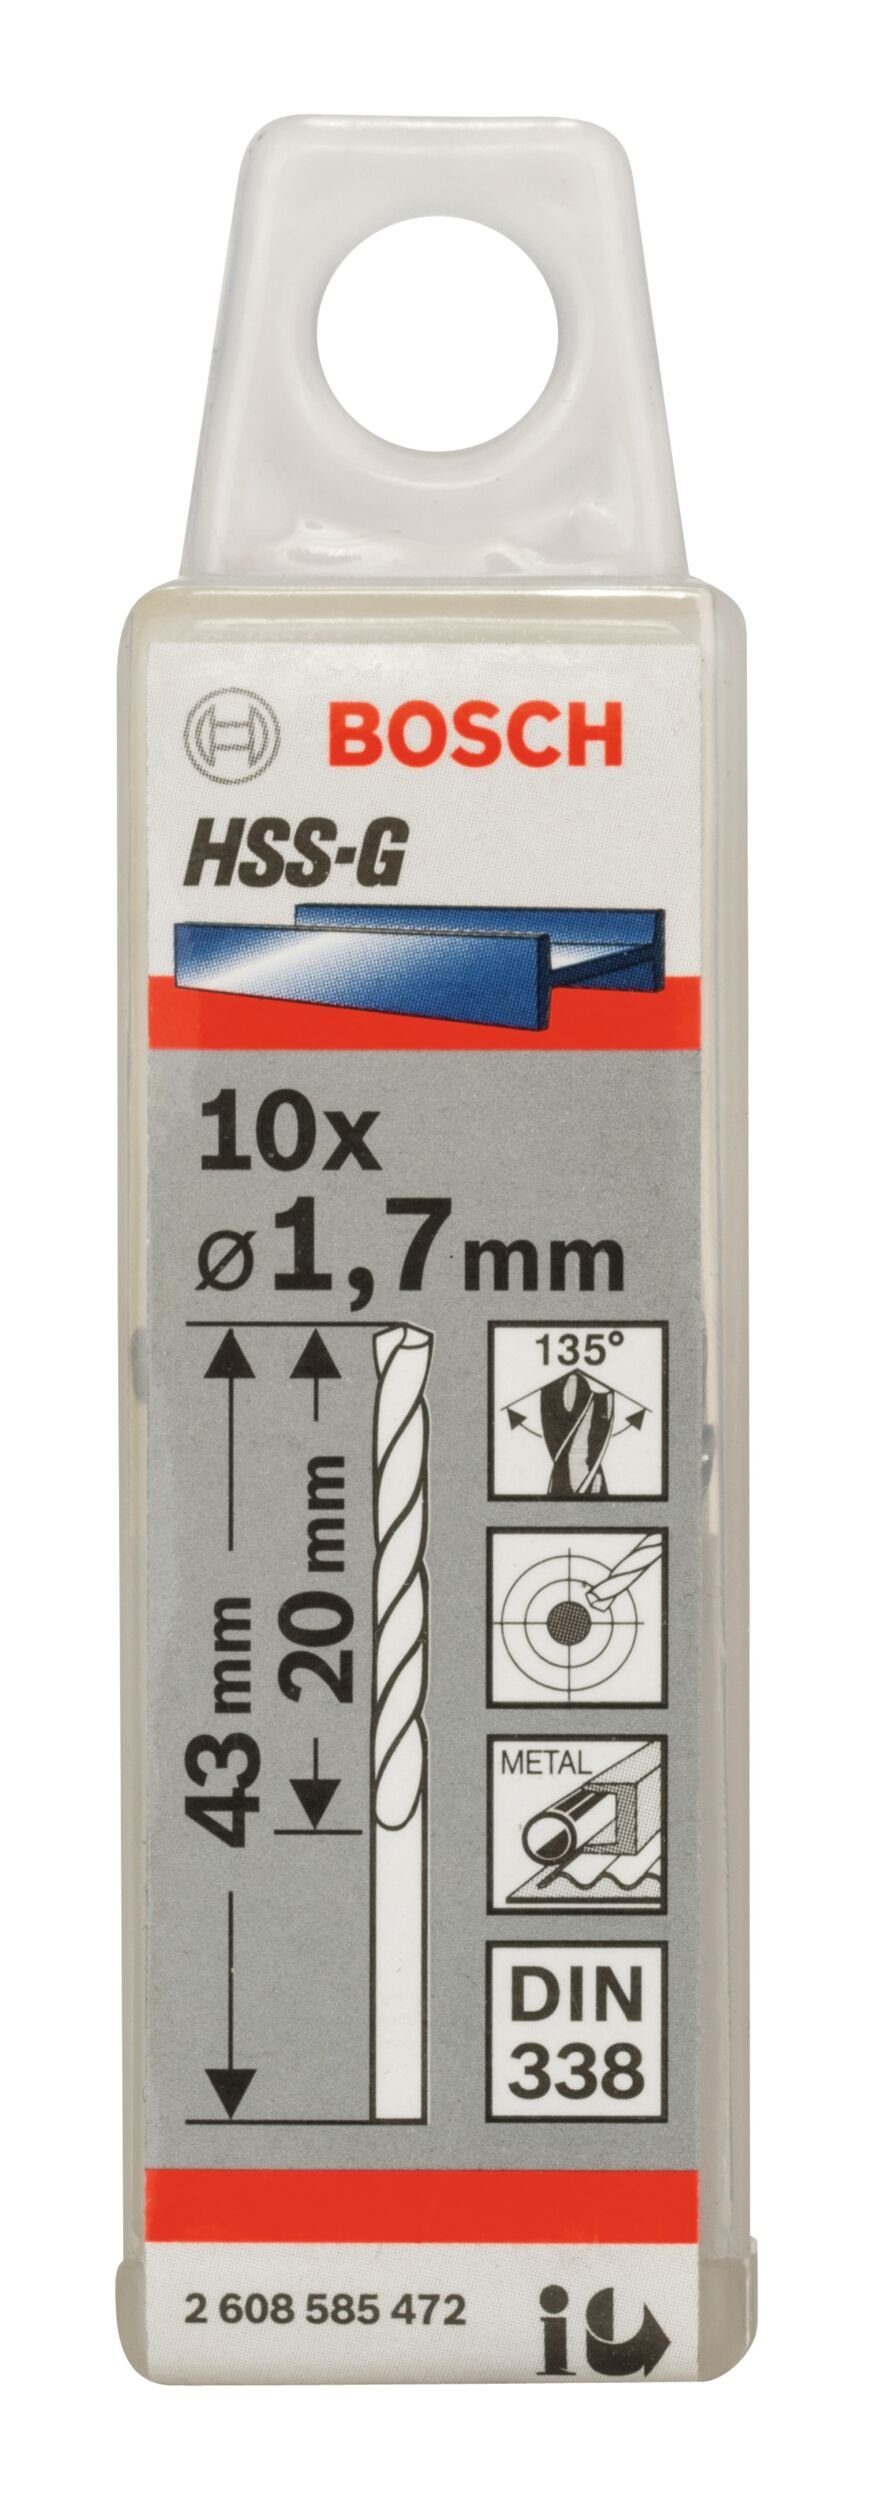 BOSCH Metallbohrer, (10 338) 1,7 - 20 x - x (DIN 43 mm 10er-Pack Stück), HSS-G